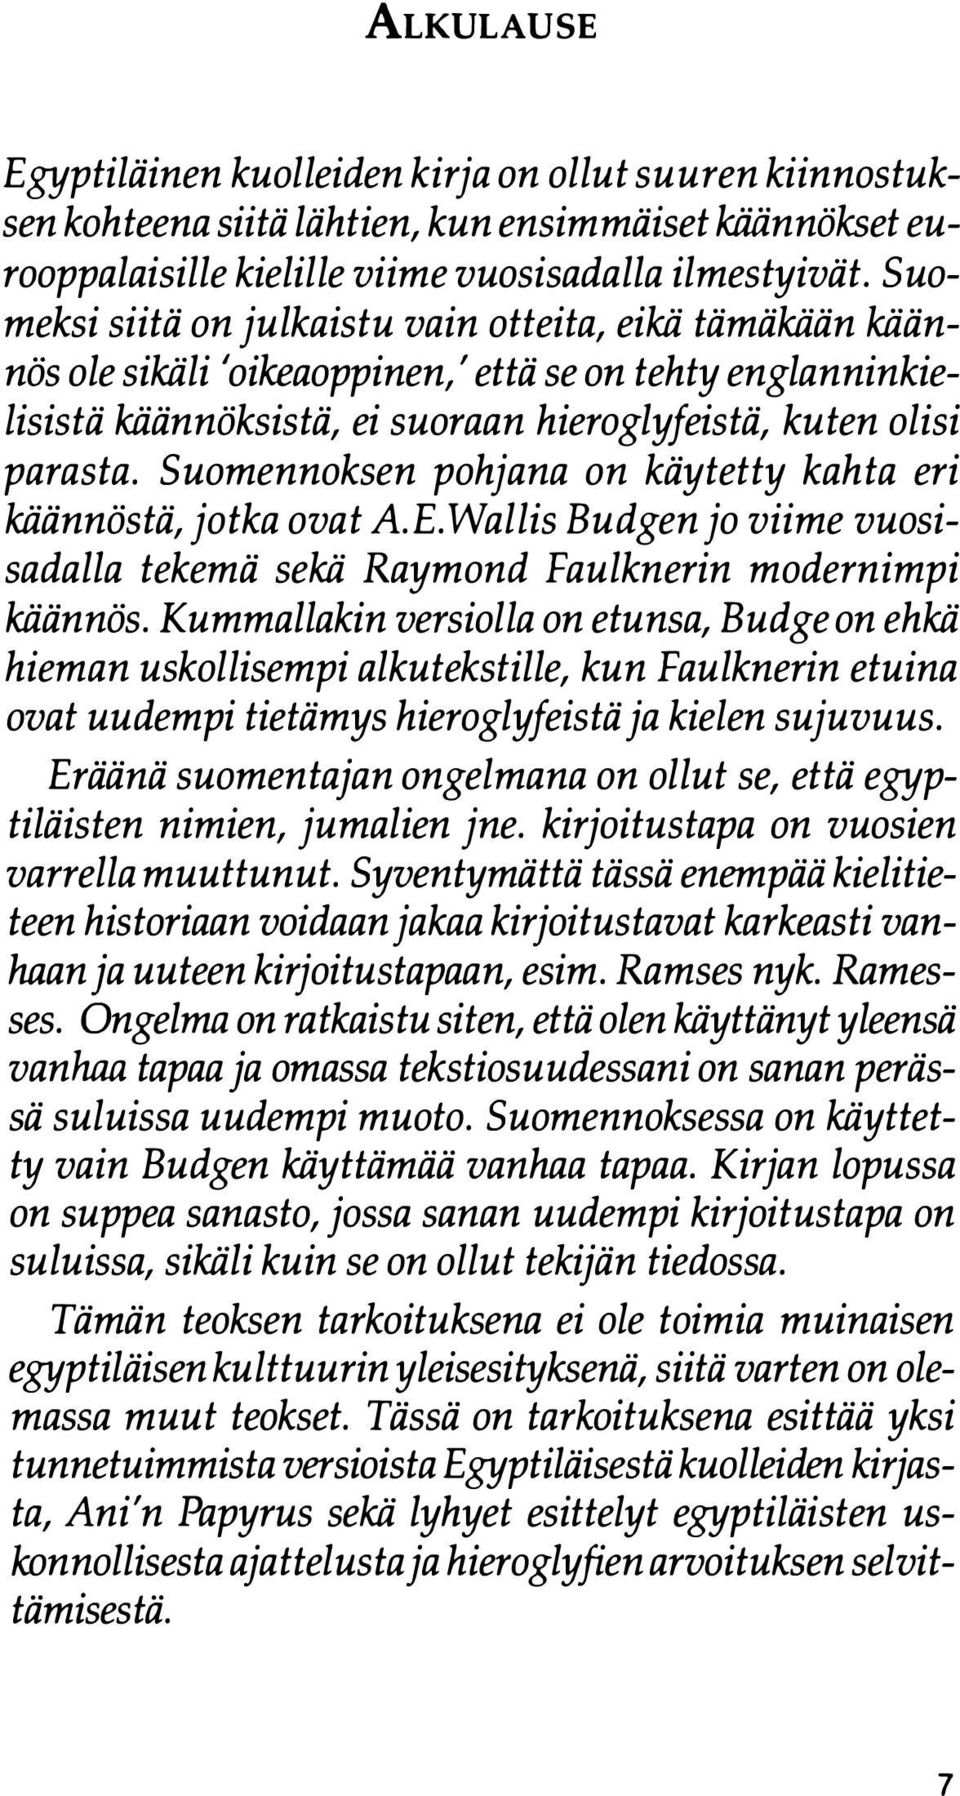 Suomennoksen pohjana on käytetty kahta eri käännöstä, jotka ovat A.E. Wallis Budgen jo viime vuosisadalla tekemä sekä Raymond Faulknerin modernimpi kiiännös.